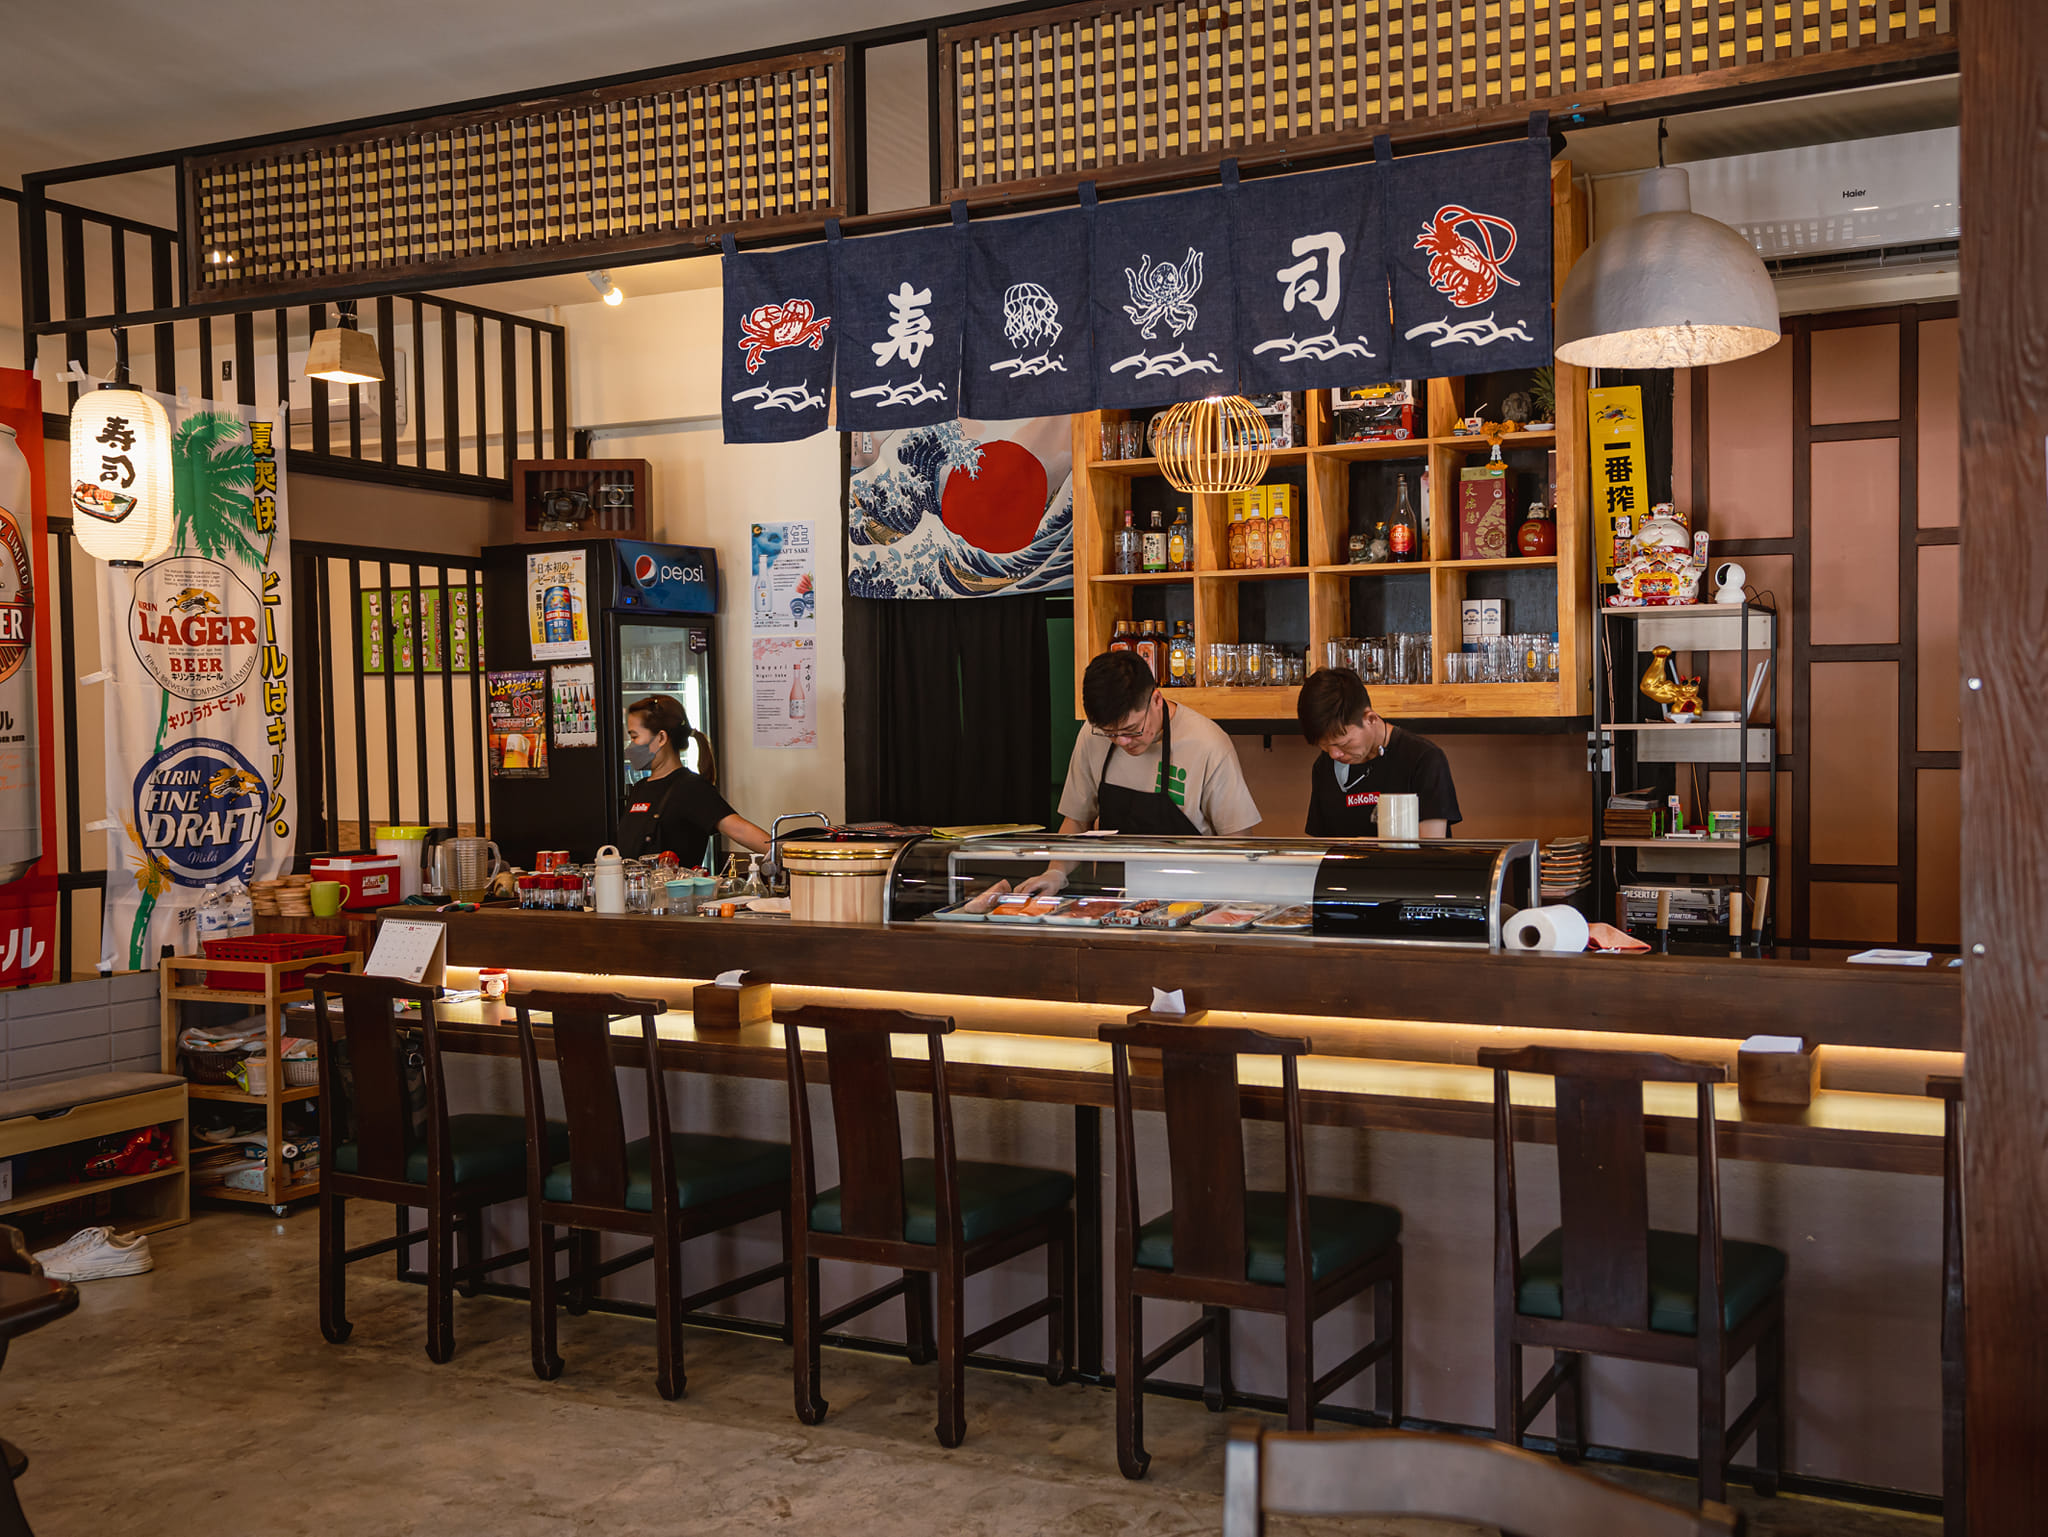 โคโคโระ ซูชิบาร์ (Kokoro Sushi Bar) : นนทบุรี (Nonthaburi)